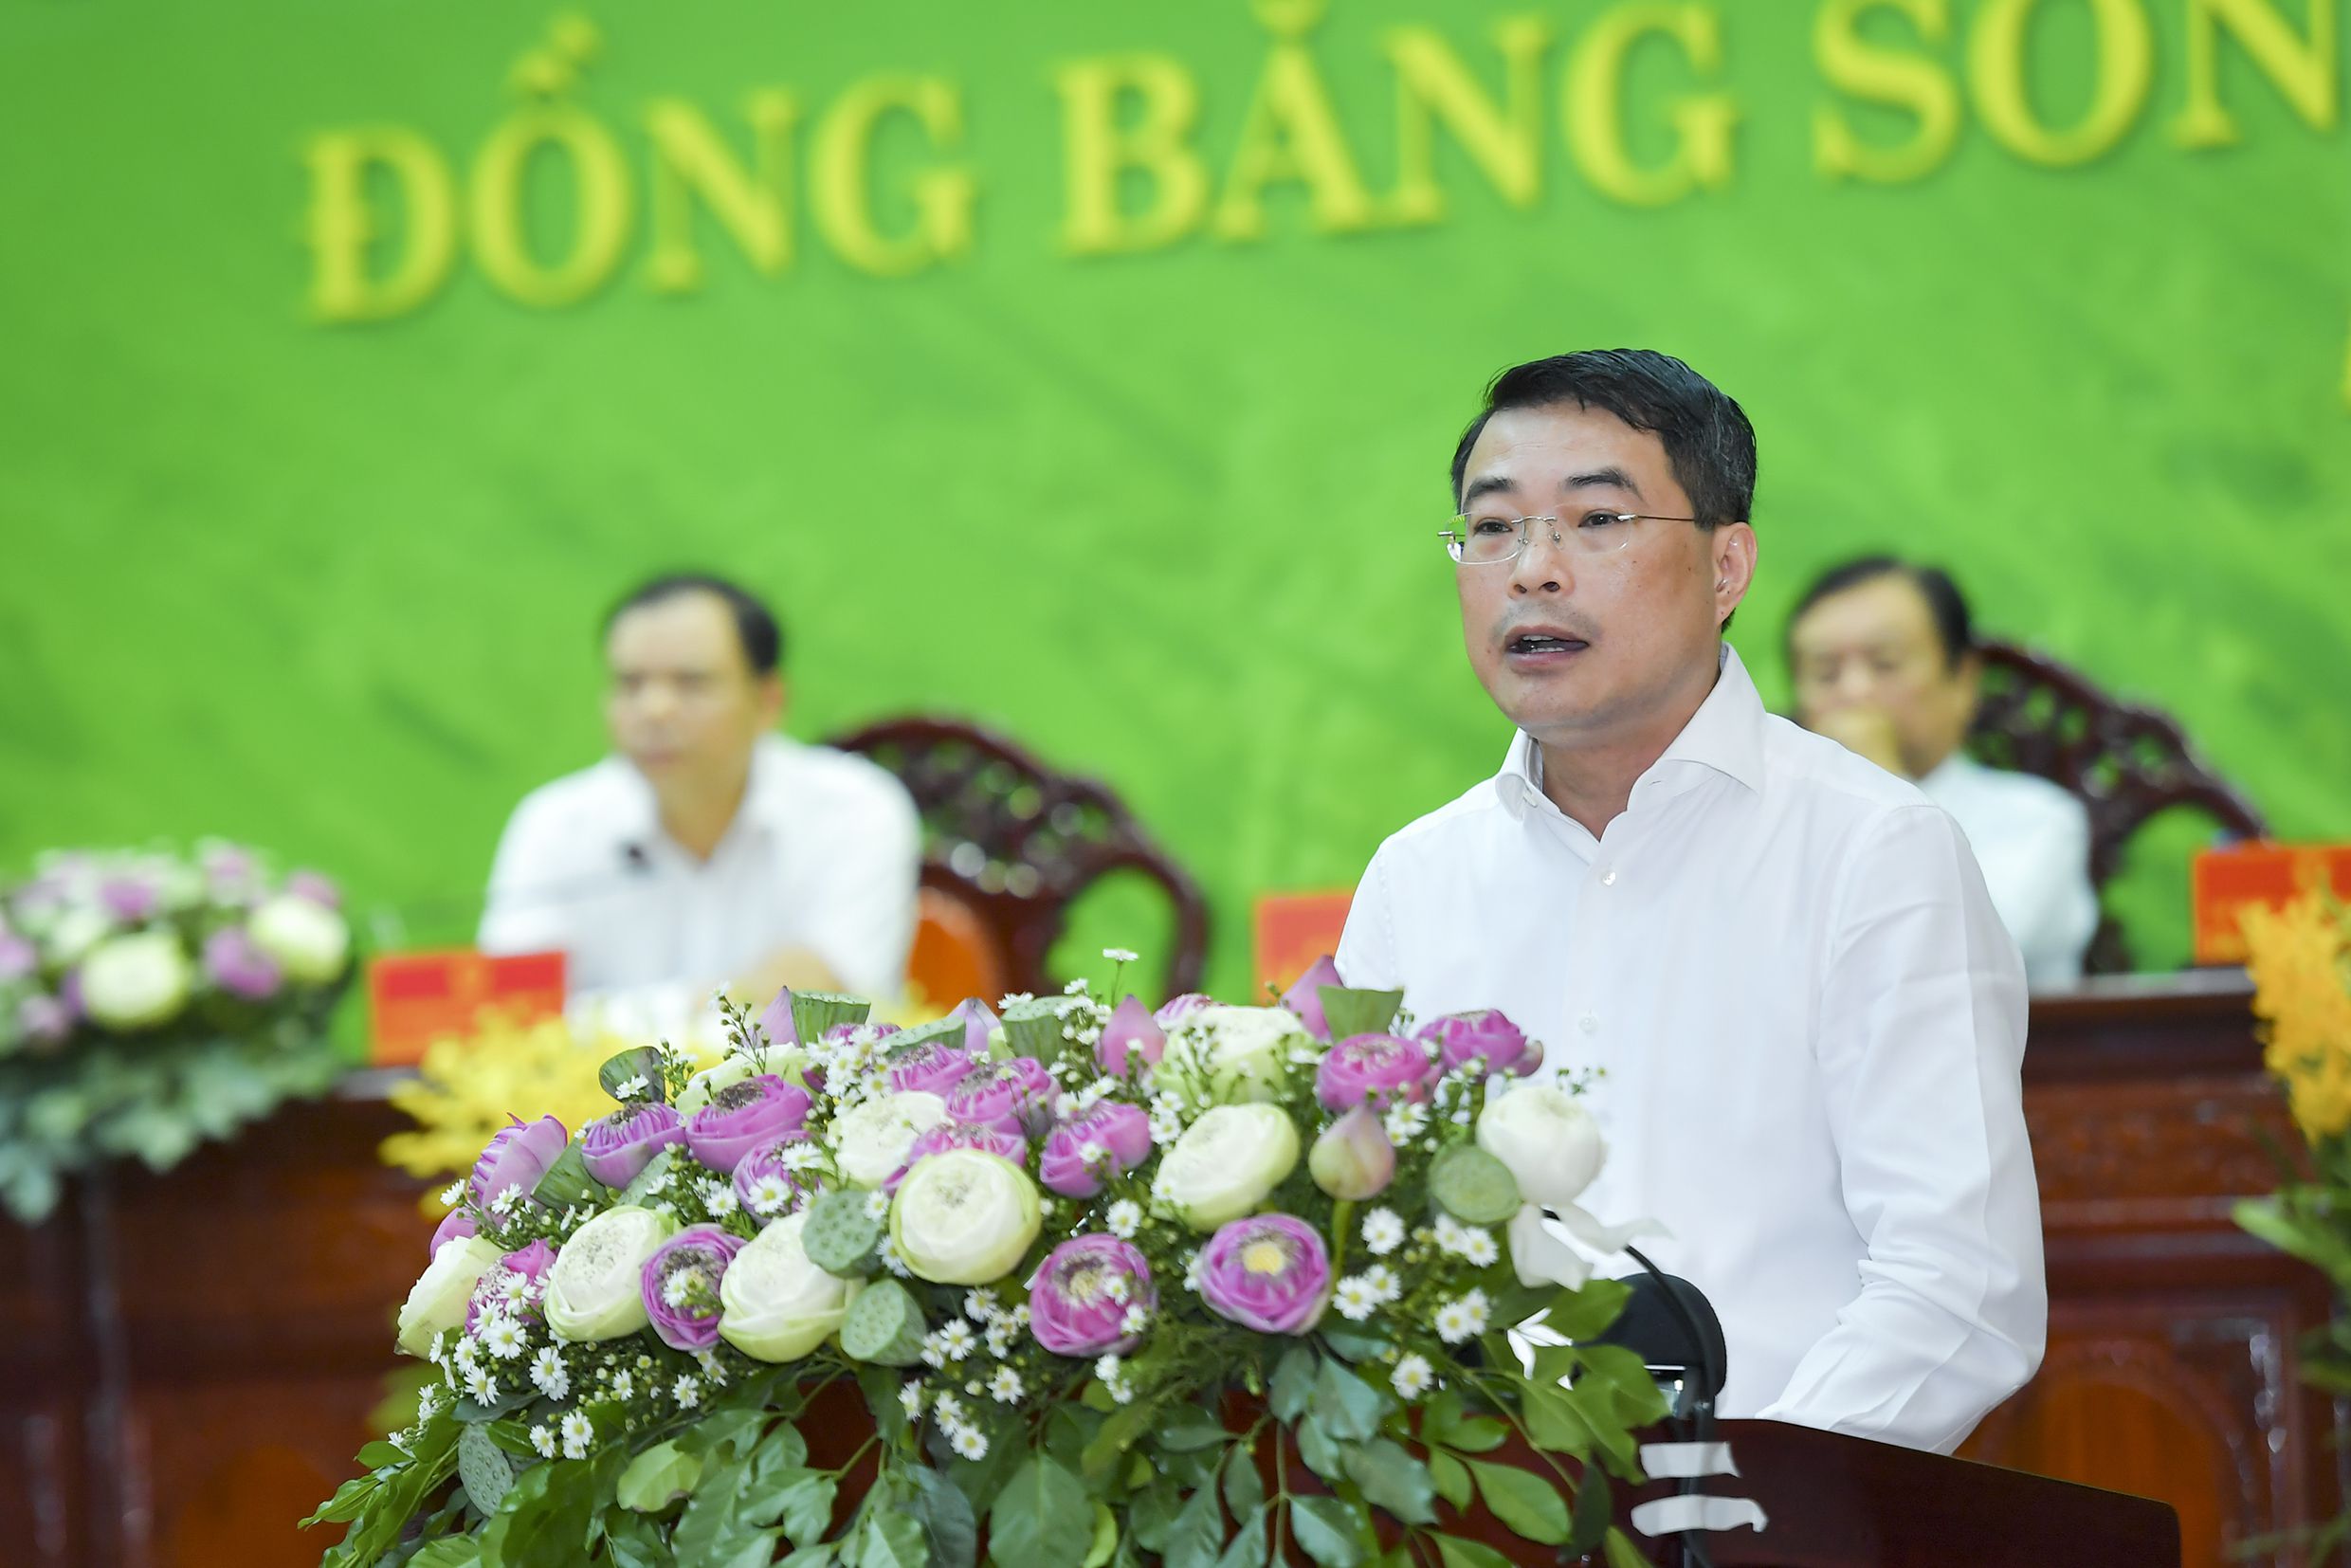 Thống đốc Lê Minh Hưng: Cam kết đủ vốn cho vay sản xuất, tiêu thụ lúa gạo